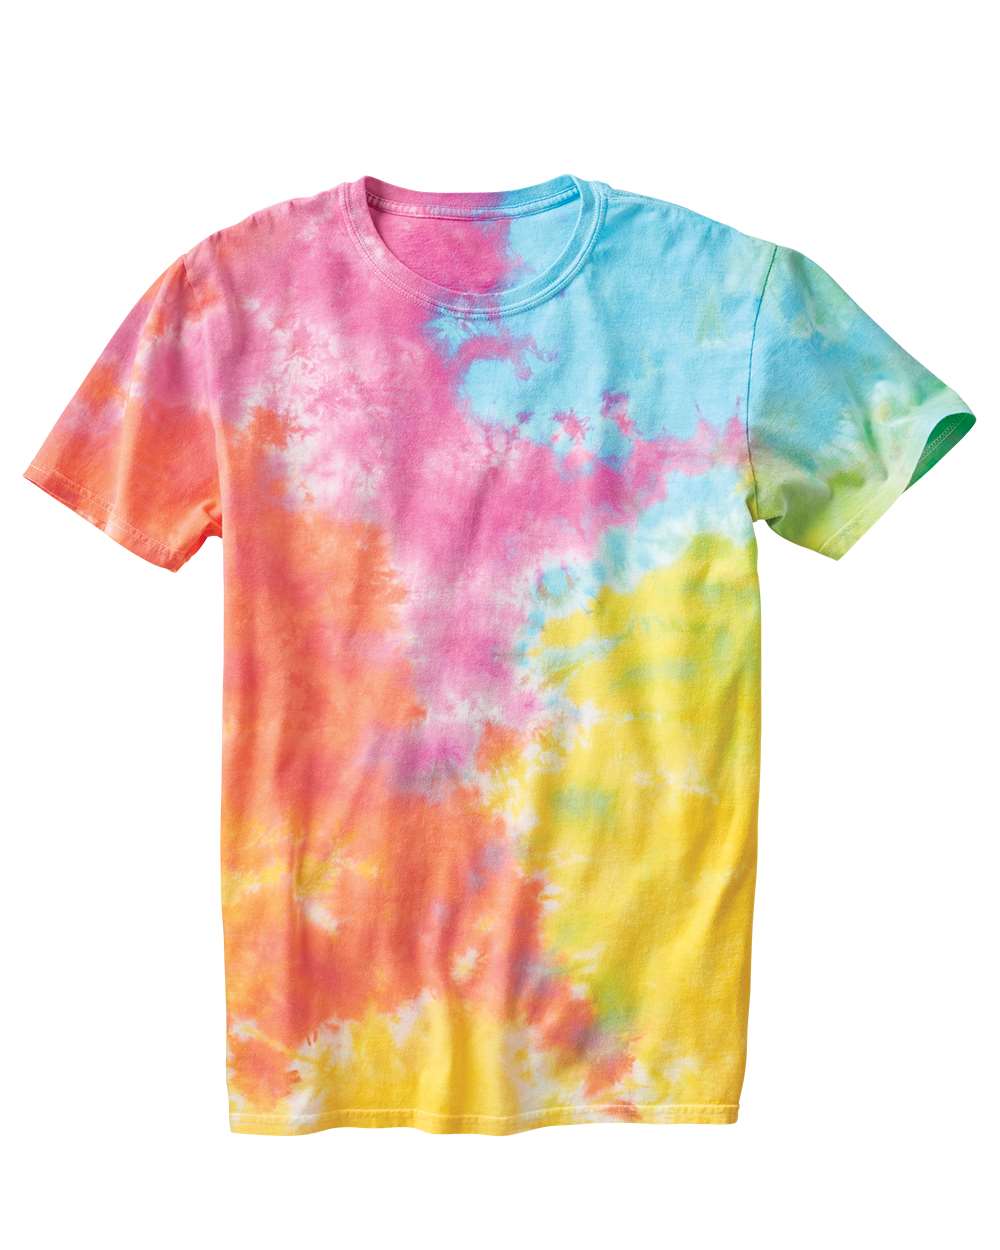 Dyenomite - Slushie Crinkle Tie-Dyed T-Shirt - 640VR